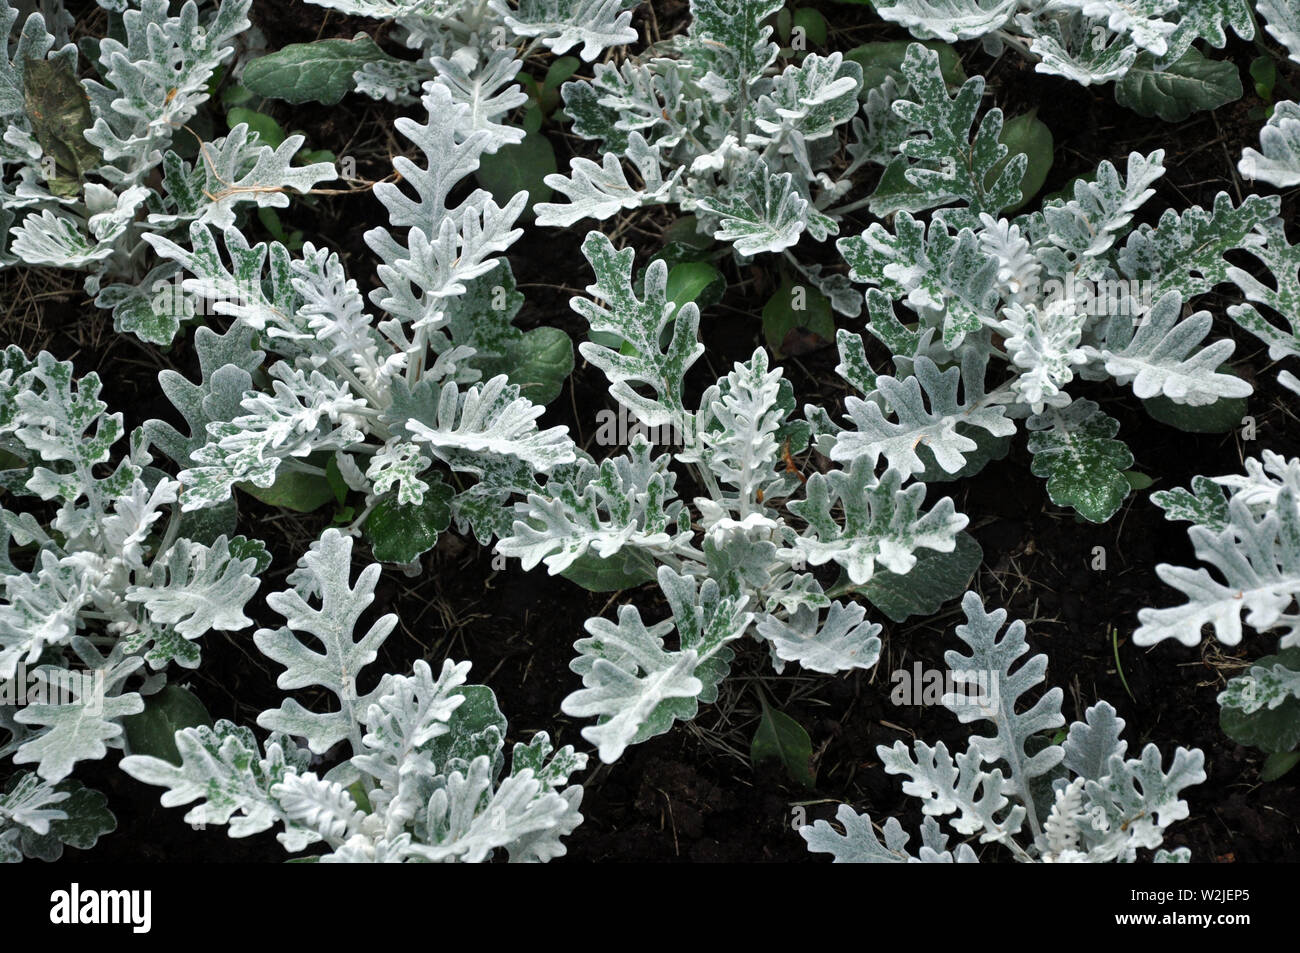 Grau grün Blätter von zinerarie in Makro. Exotische Dusty Miller Pflanze  close-up. Natürlichen Hintergrund von zinerarie maritima. Silber staub  Kraut Stockfotografie - Alamy